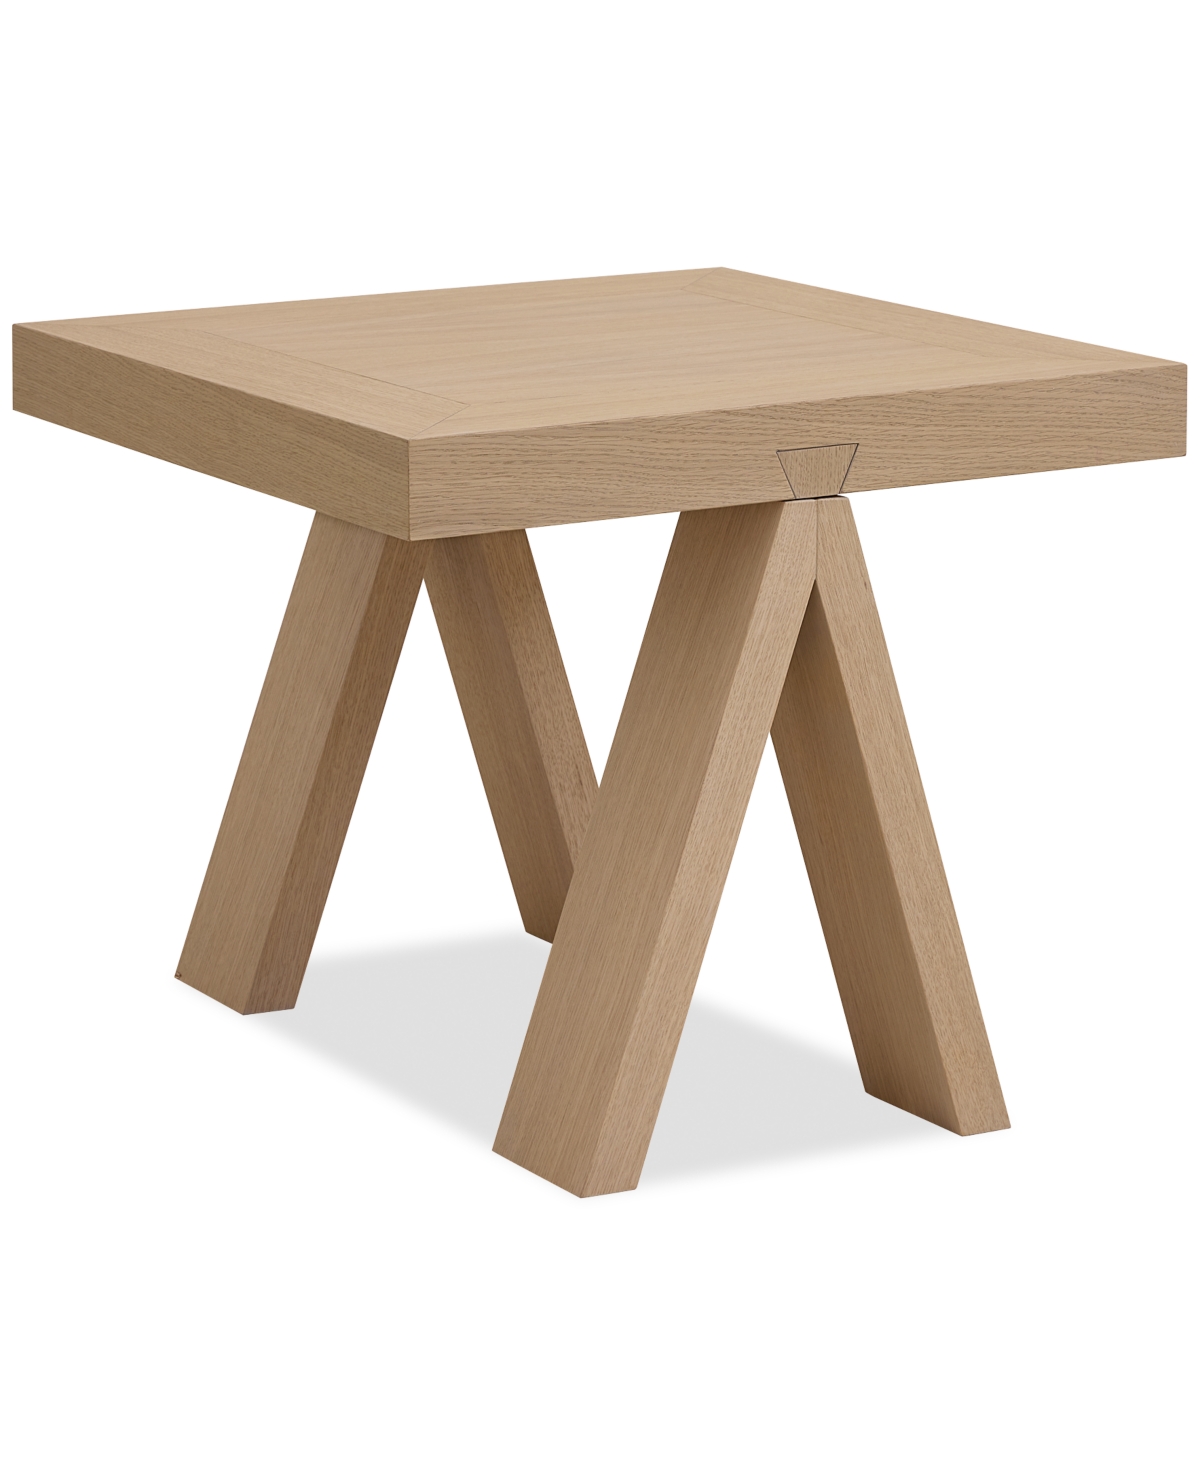 Drexel Atwell Side Table In Naturl Oak